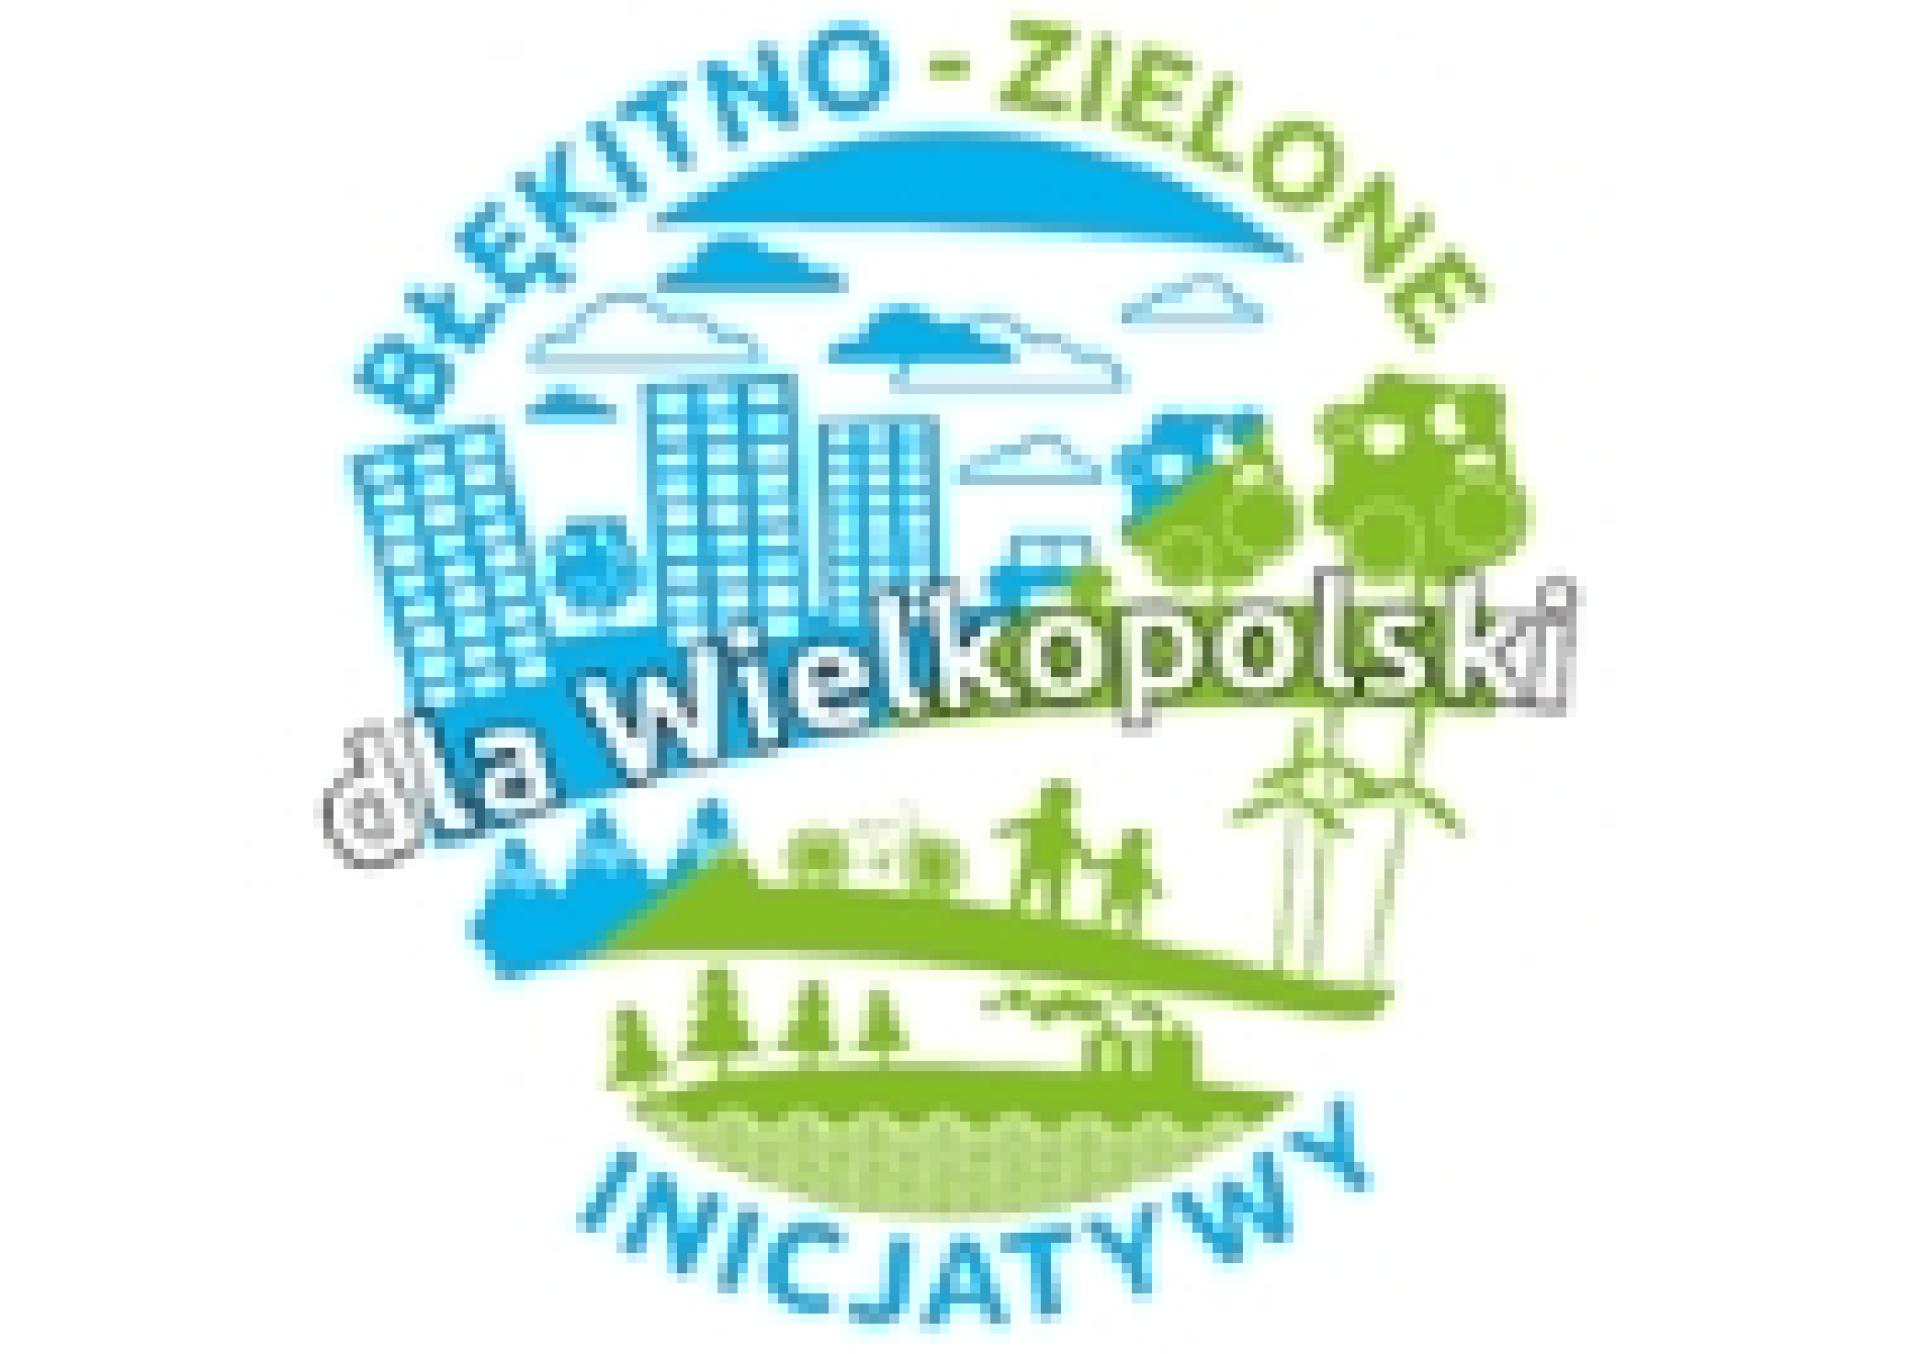 Ogłoszenie naboru wniosków na dofinansowanie zadań do realizacji w 2023 r. w ramach Programu pn. Błękitno-zielone inicjatywy dla Wielkopolski - zobacz więcej